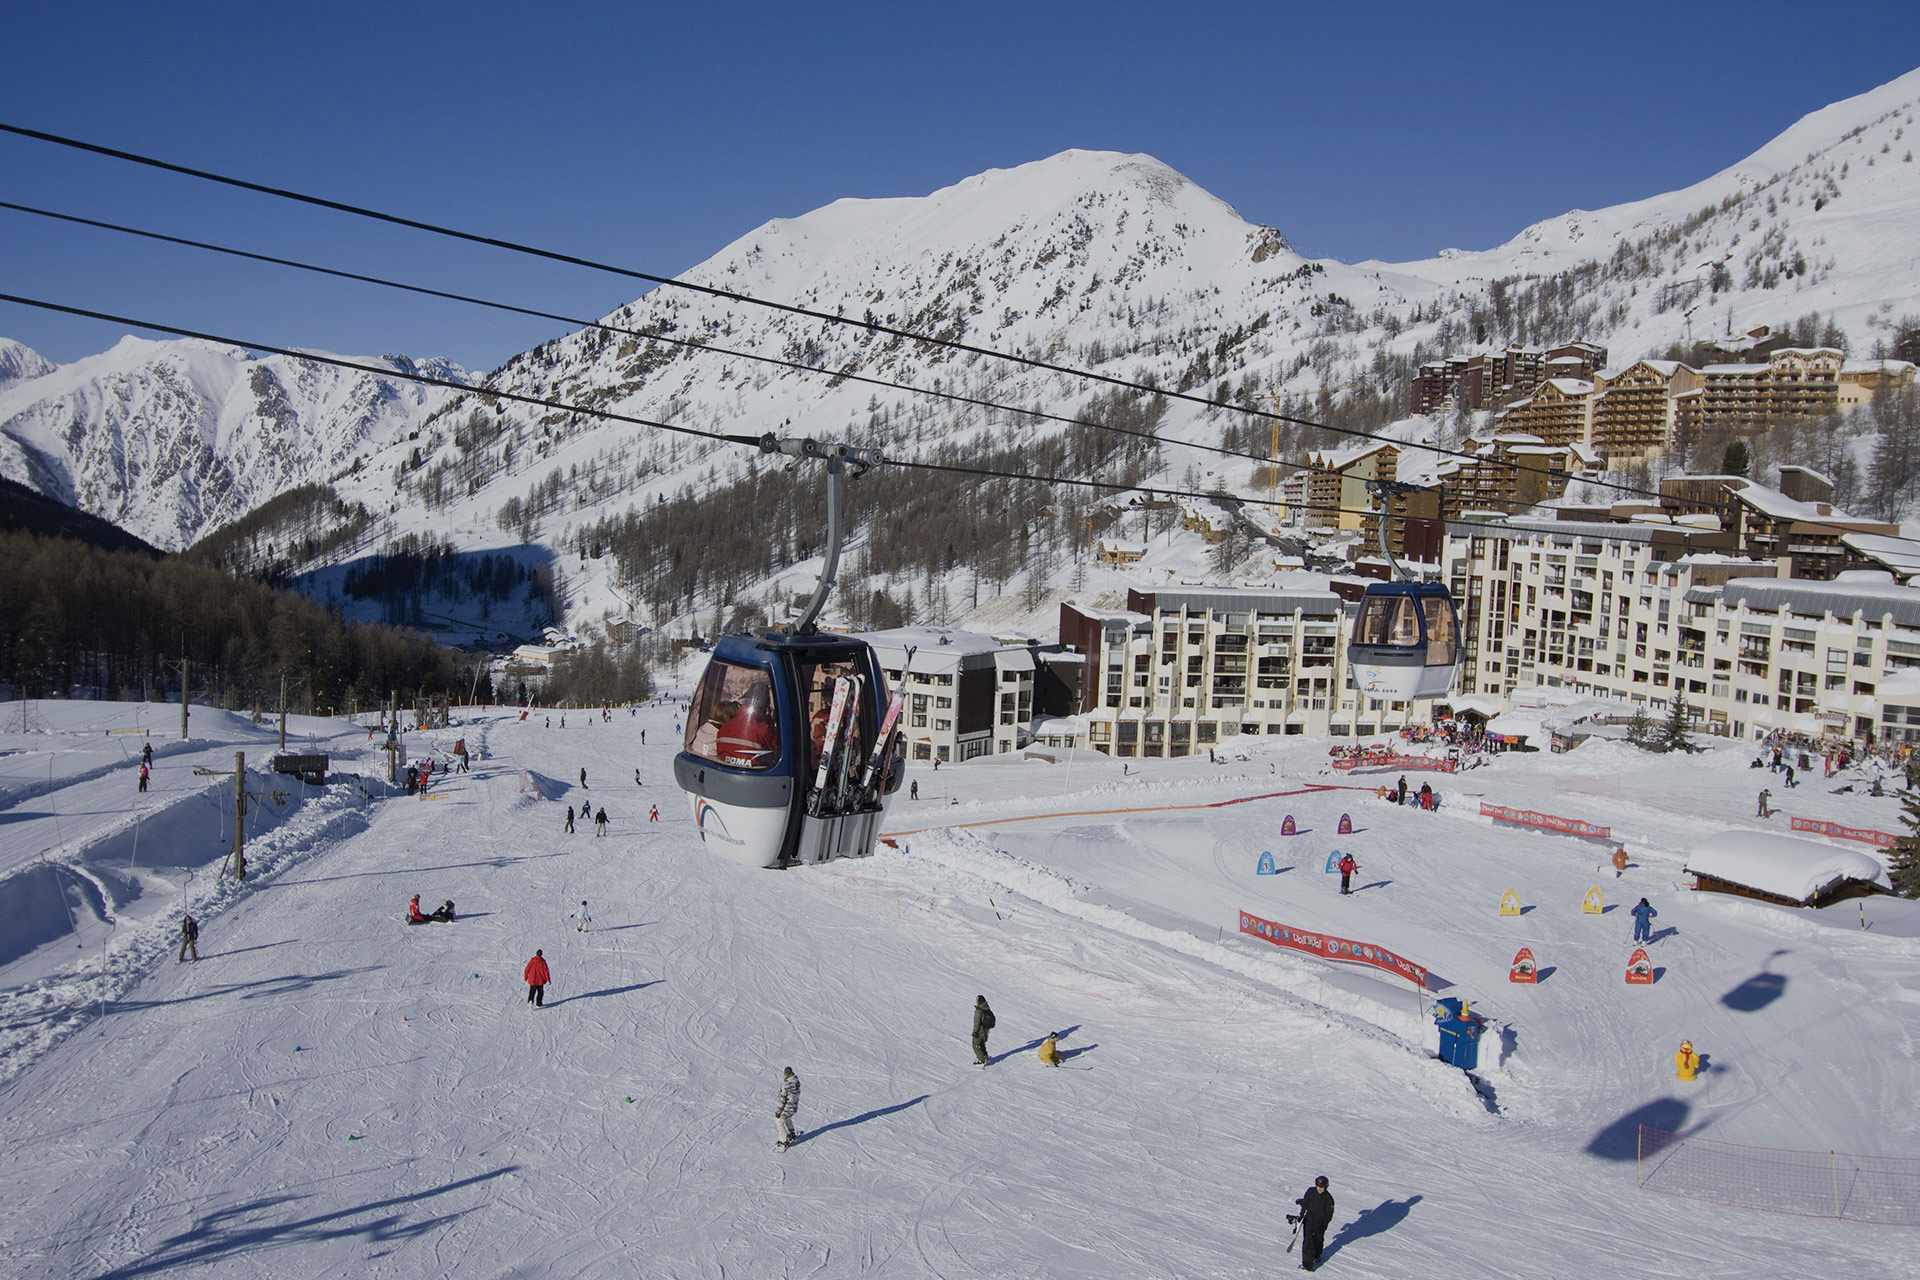 Alps ski skiing. Альпы Албании горнолыжка. Горнолыжные курорты Альп. Горнолыжная база в Альпах. Инфраструктура горнолыжного курорта.